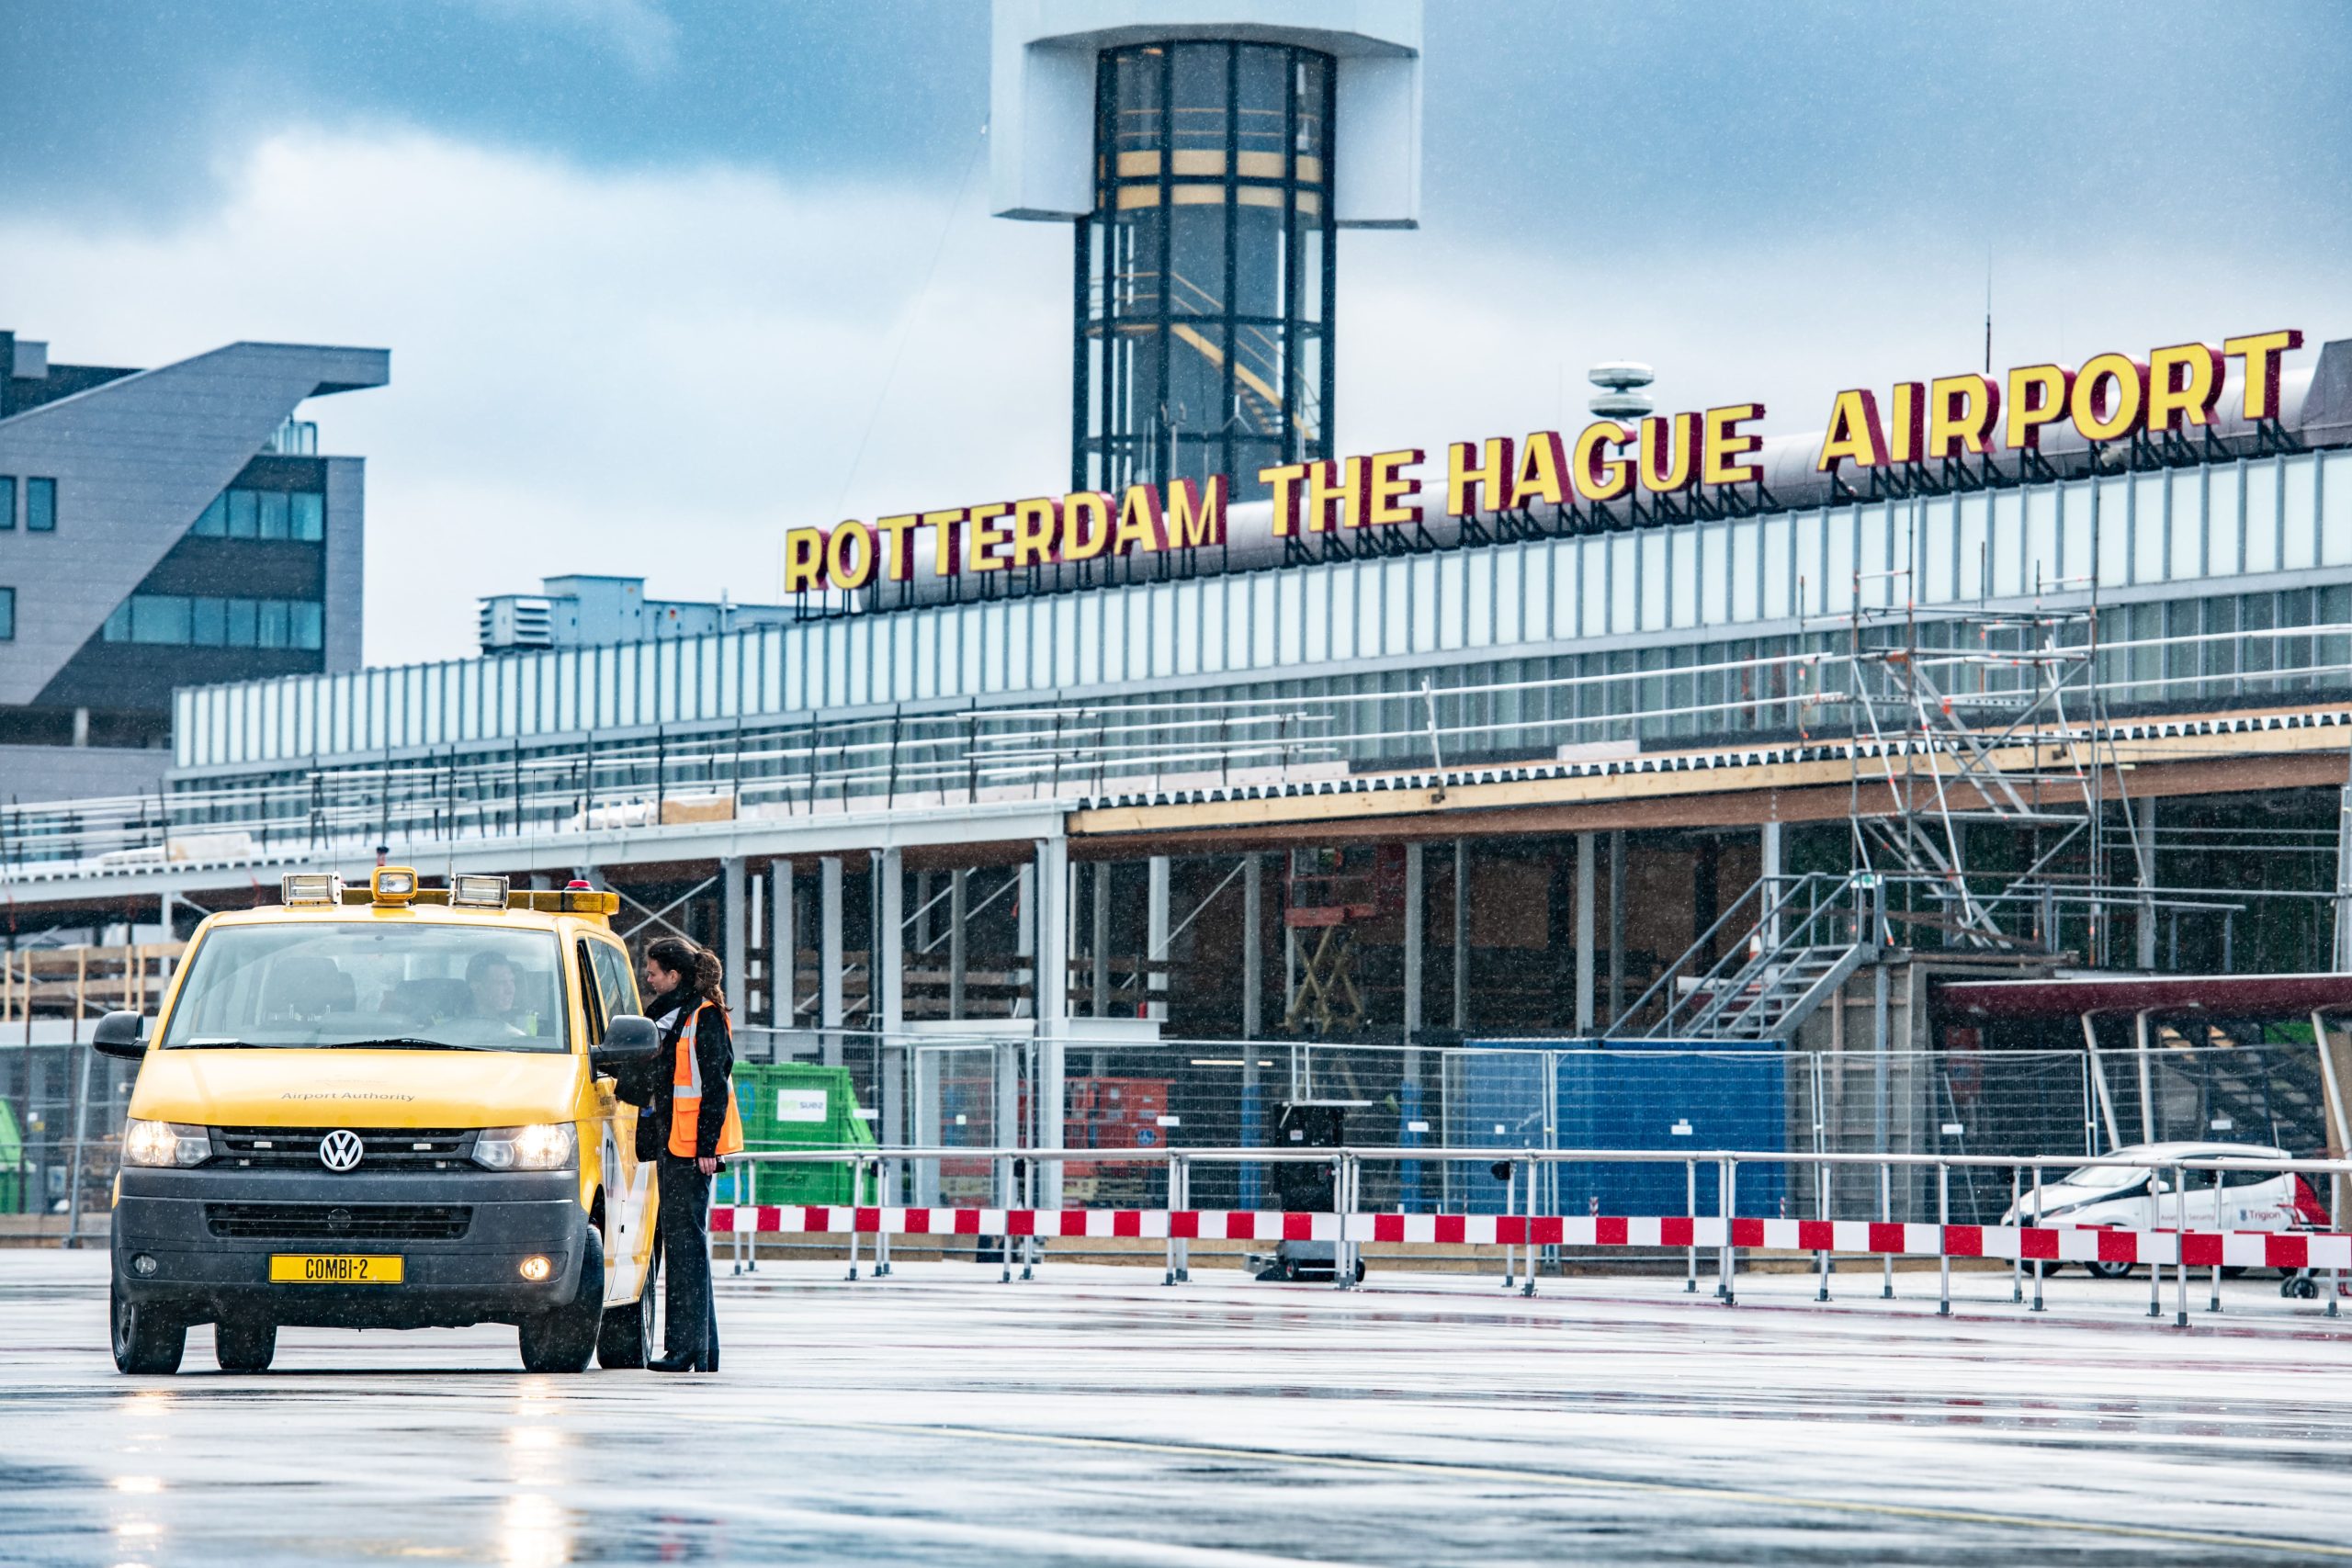 Compris heeft Rotterdam The Hague Airport geholpen bij het bouwen van een solide asset management organisatie. Samen met de afdeling assets & projects is een strategisch asset management plan opgesteld dat vervolgens is vertaald naar praktisch uitvoerbare activiteiten voor elke medewerker: van directie tot monteur.